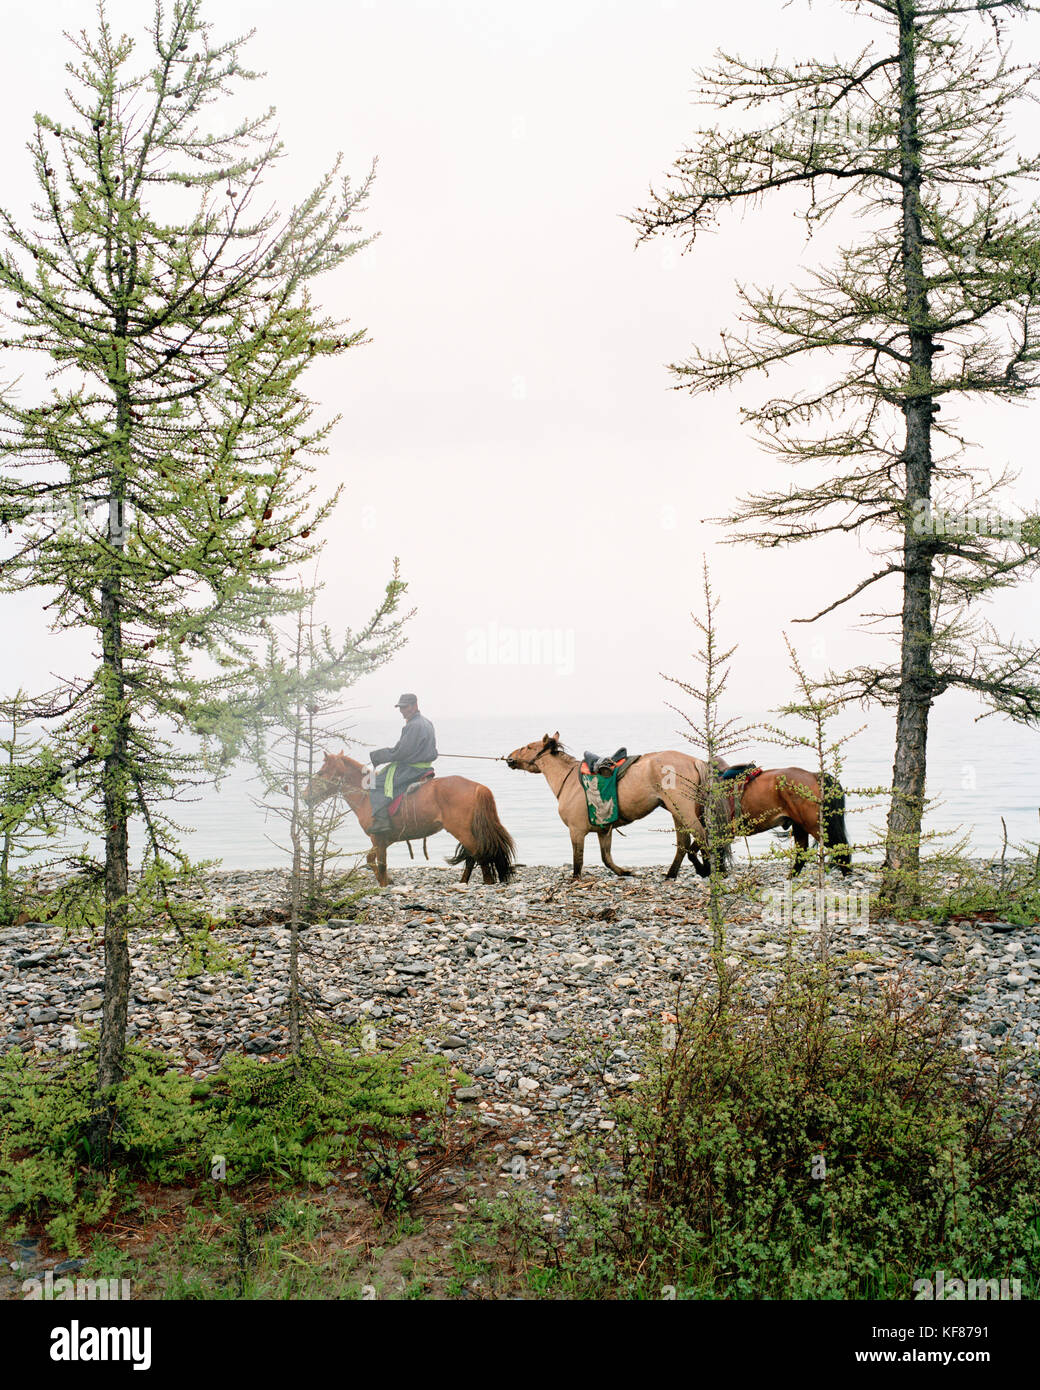 Mongolia, el lago khuvsgul, mongol montando a caballo entre los árboles y el lago, toilogt ger camp Foto de stock